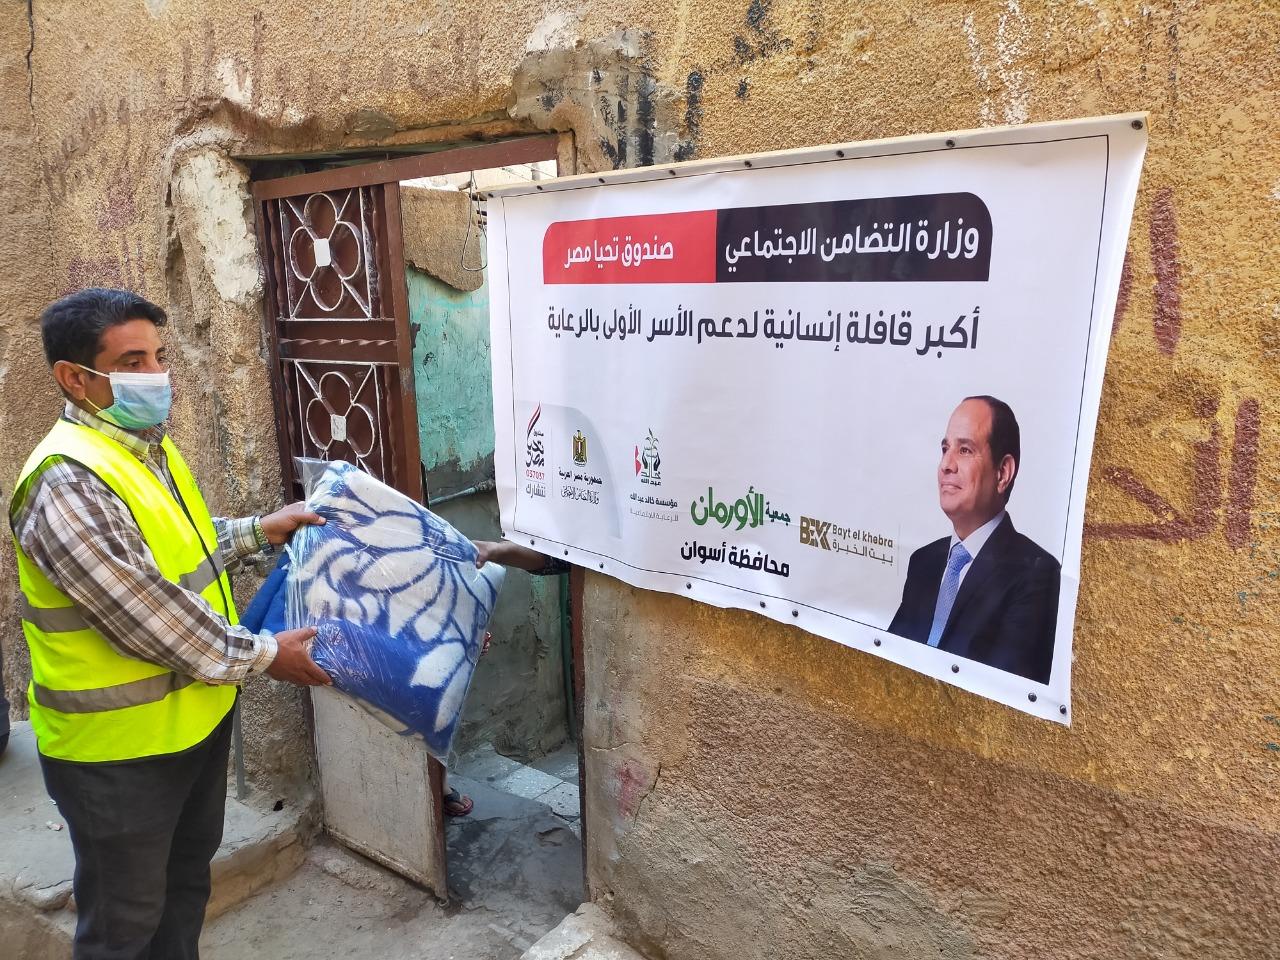   محافظ أسوان: البدء في توزيع المساعدات الإنسانية قافلة تحيا مصر